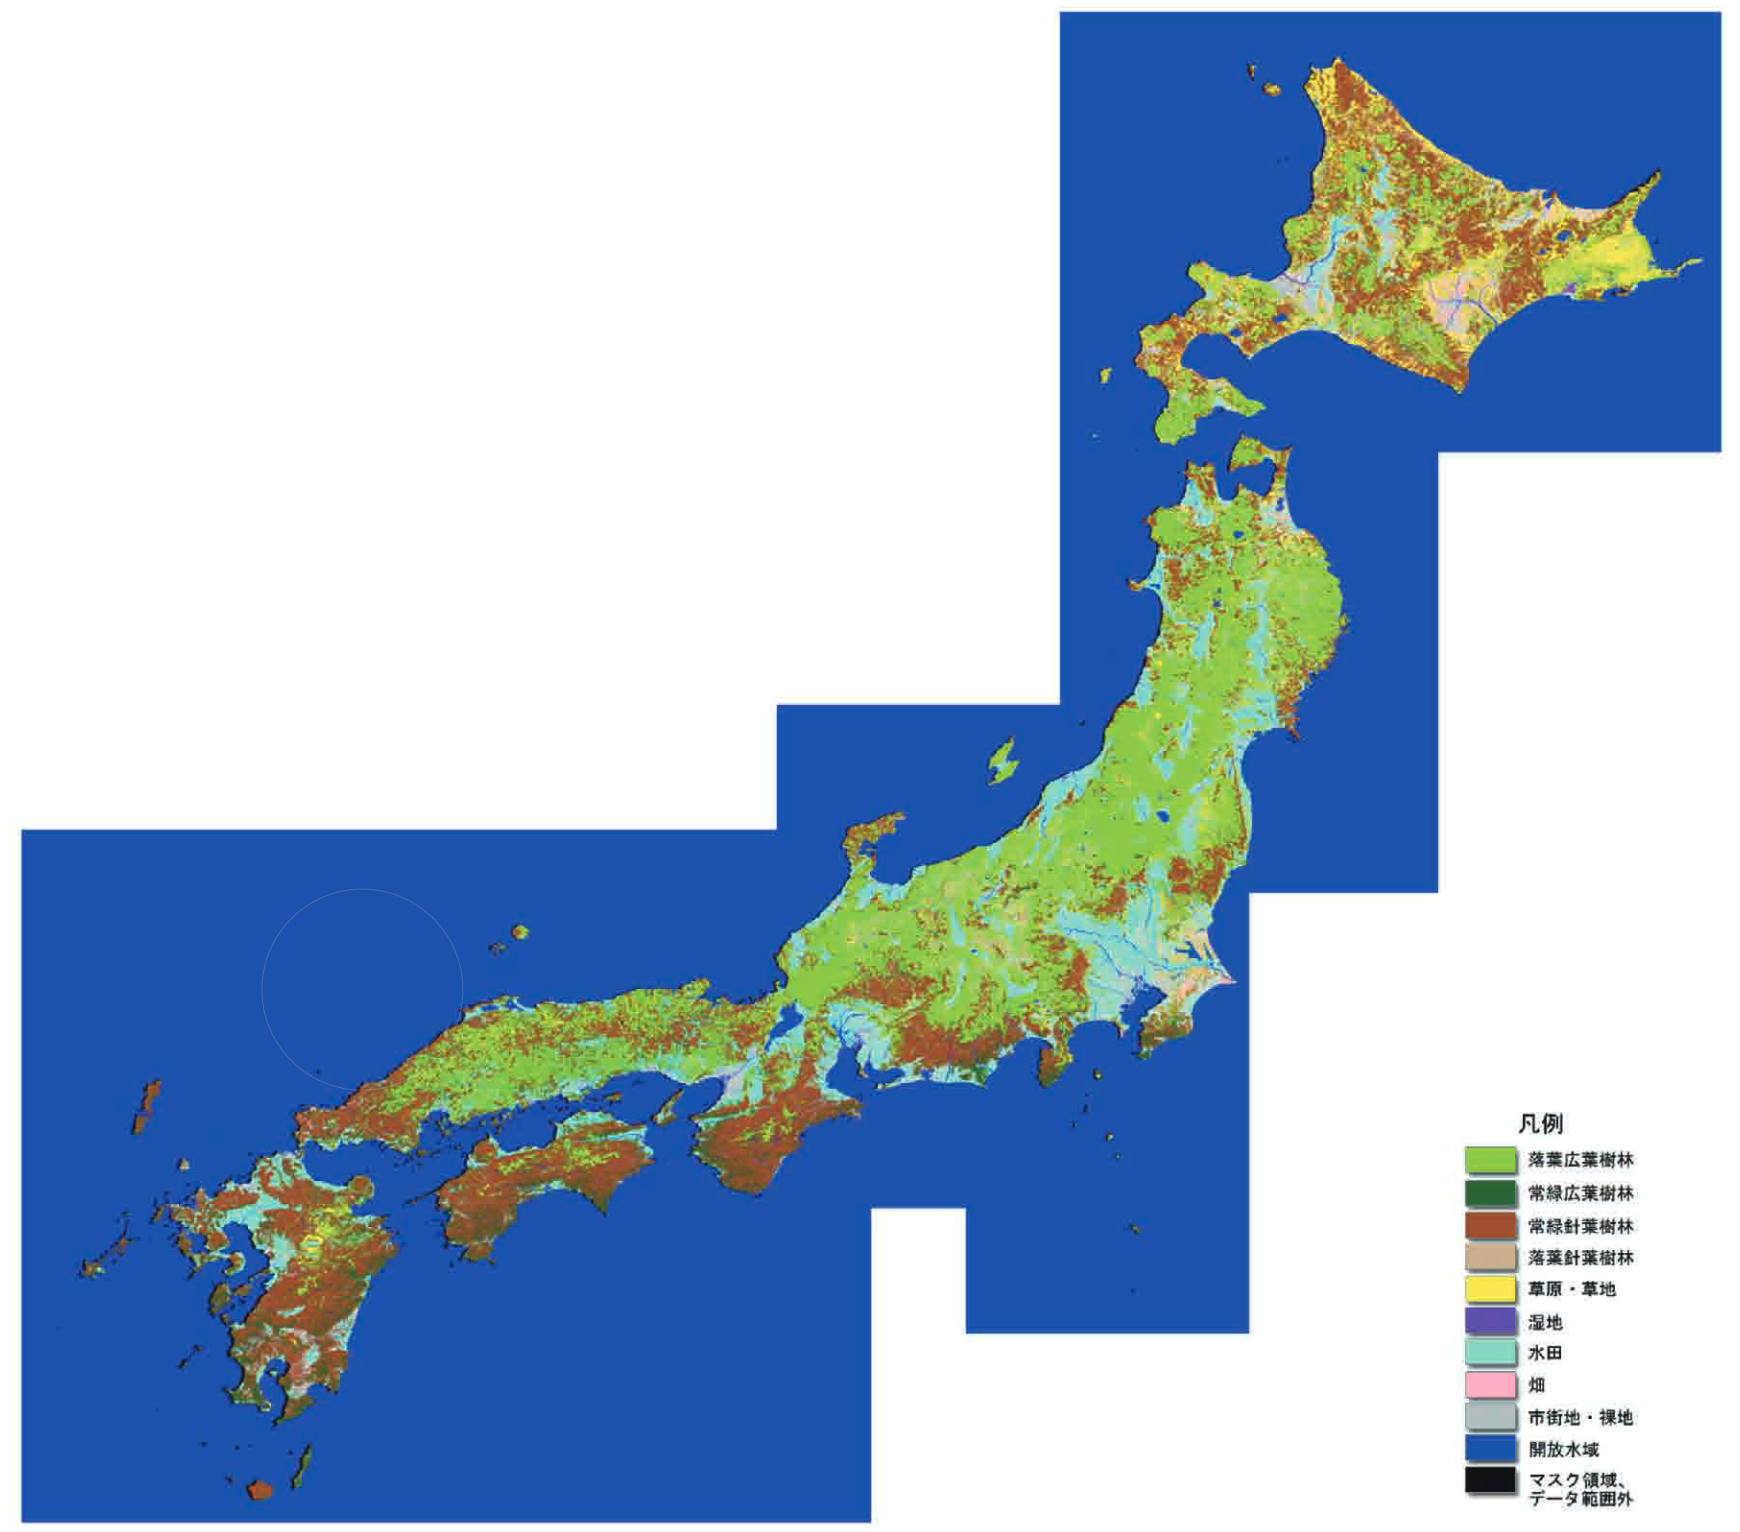 2009年のMODISデータを使用して作成した全国自然環境概況図